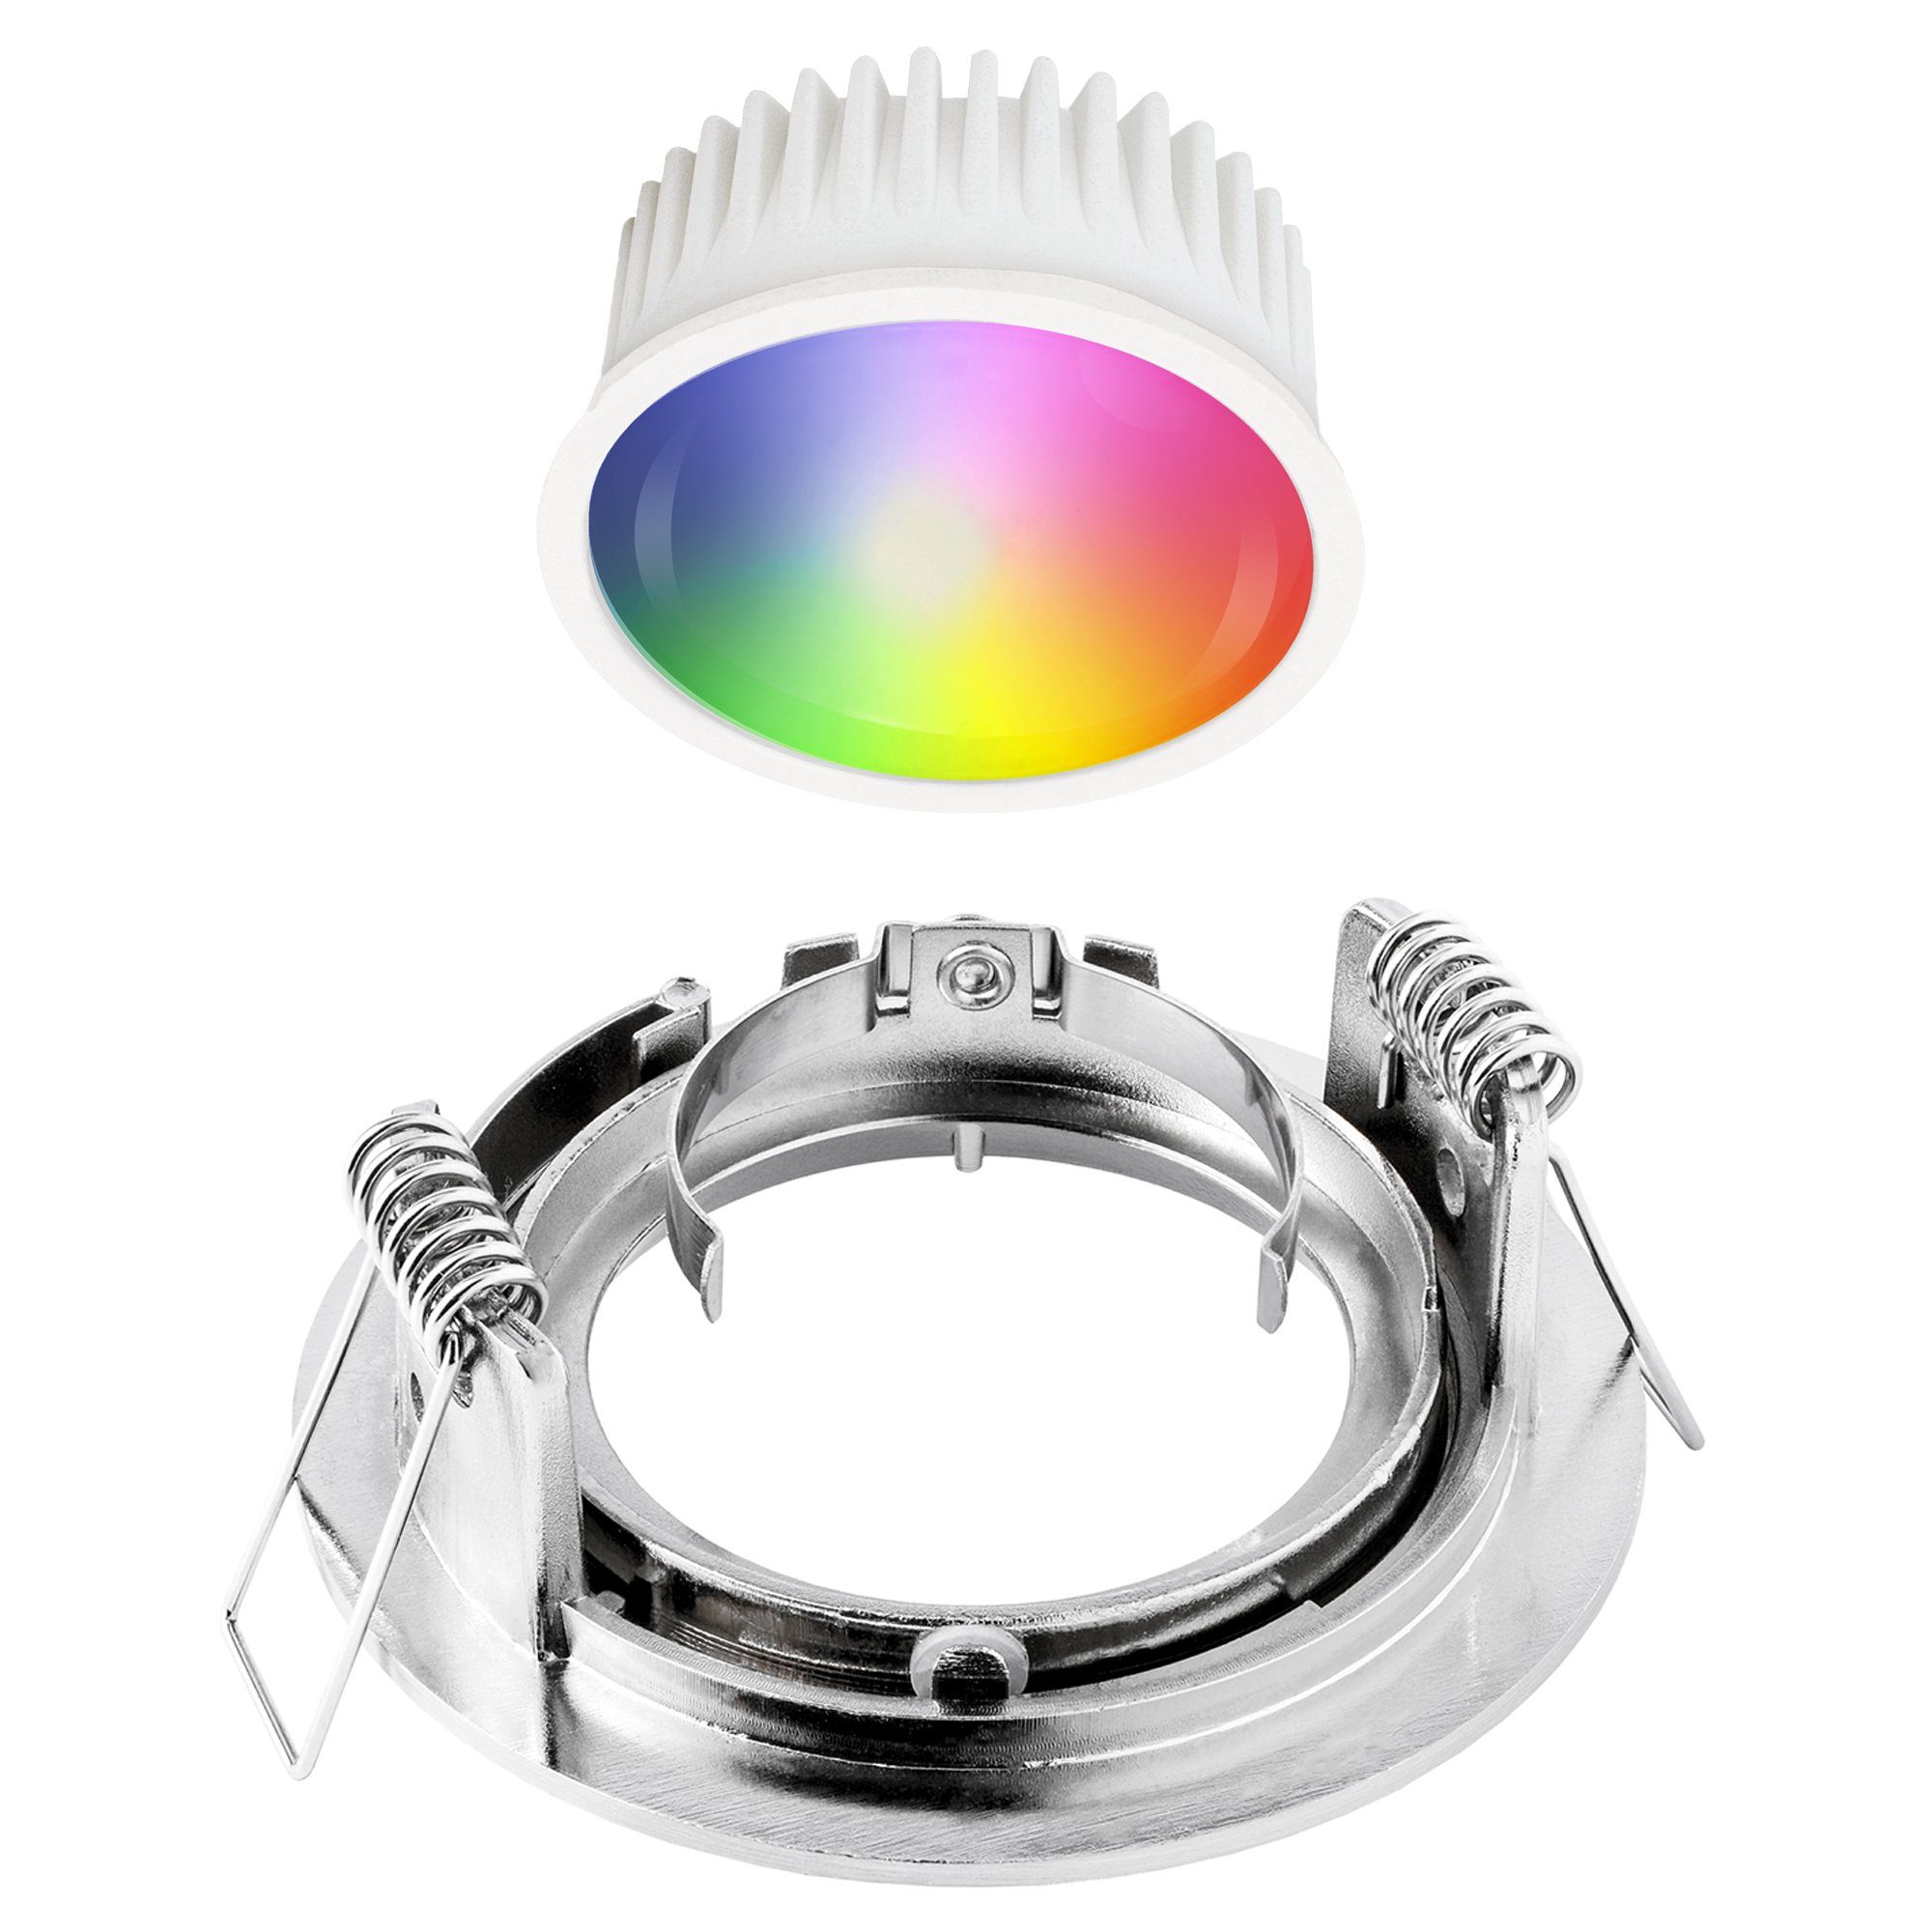 linovum LED Einbaustrahler LED Einbaustrahler Edelstahl Leuchtmittel inklusive inkl. starr Smart, Optik inklusive, Leuchtmittel gebuerstet rund